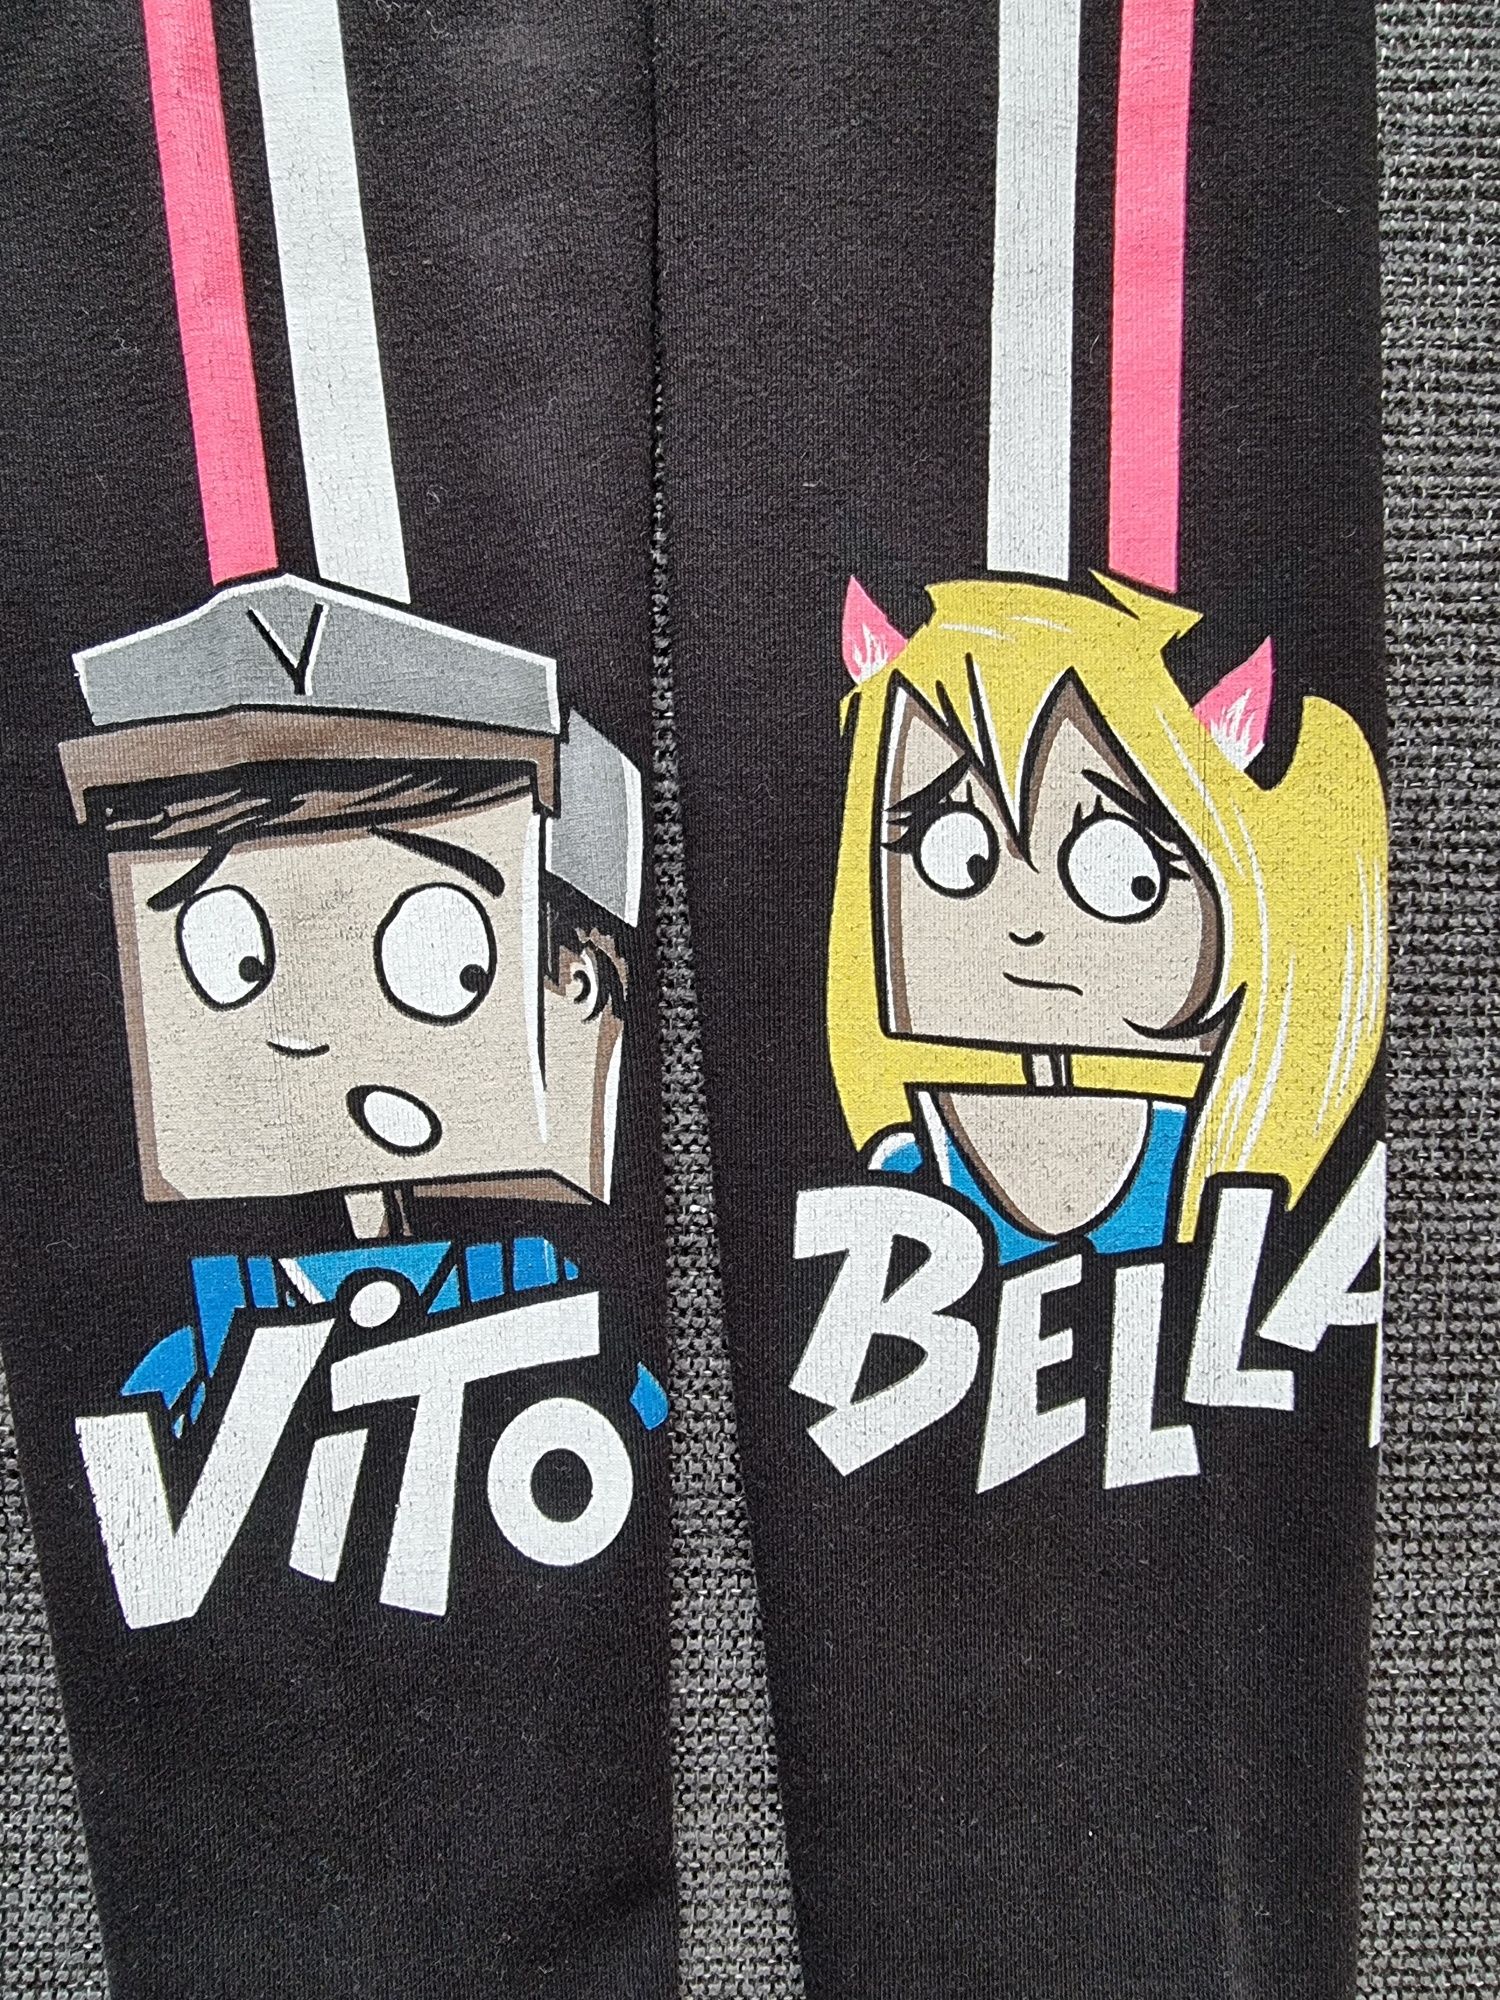 Spodnie Bella i Vito 134